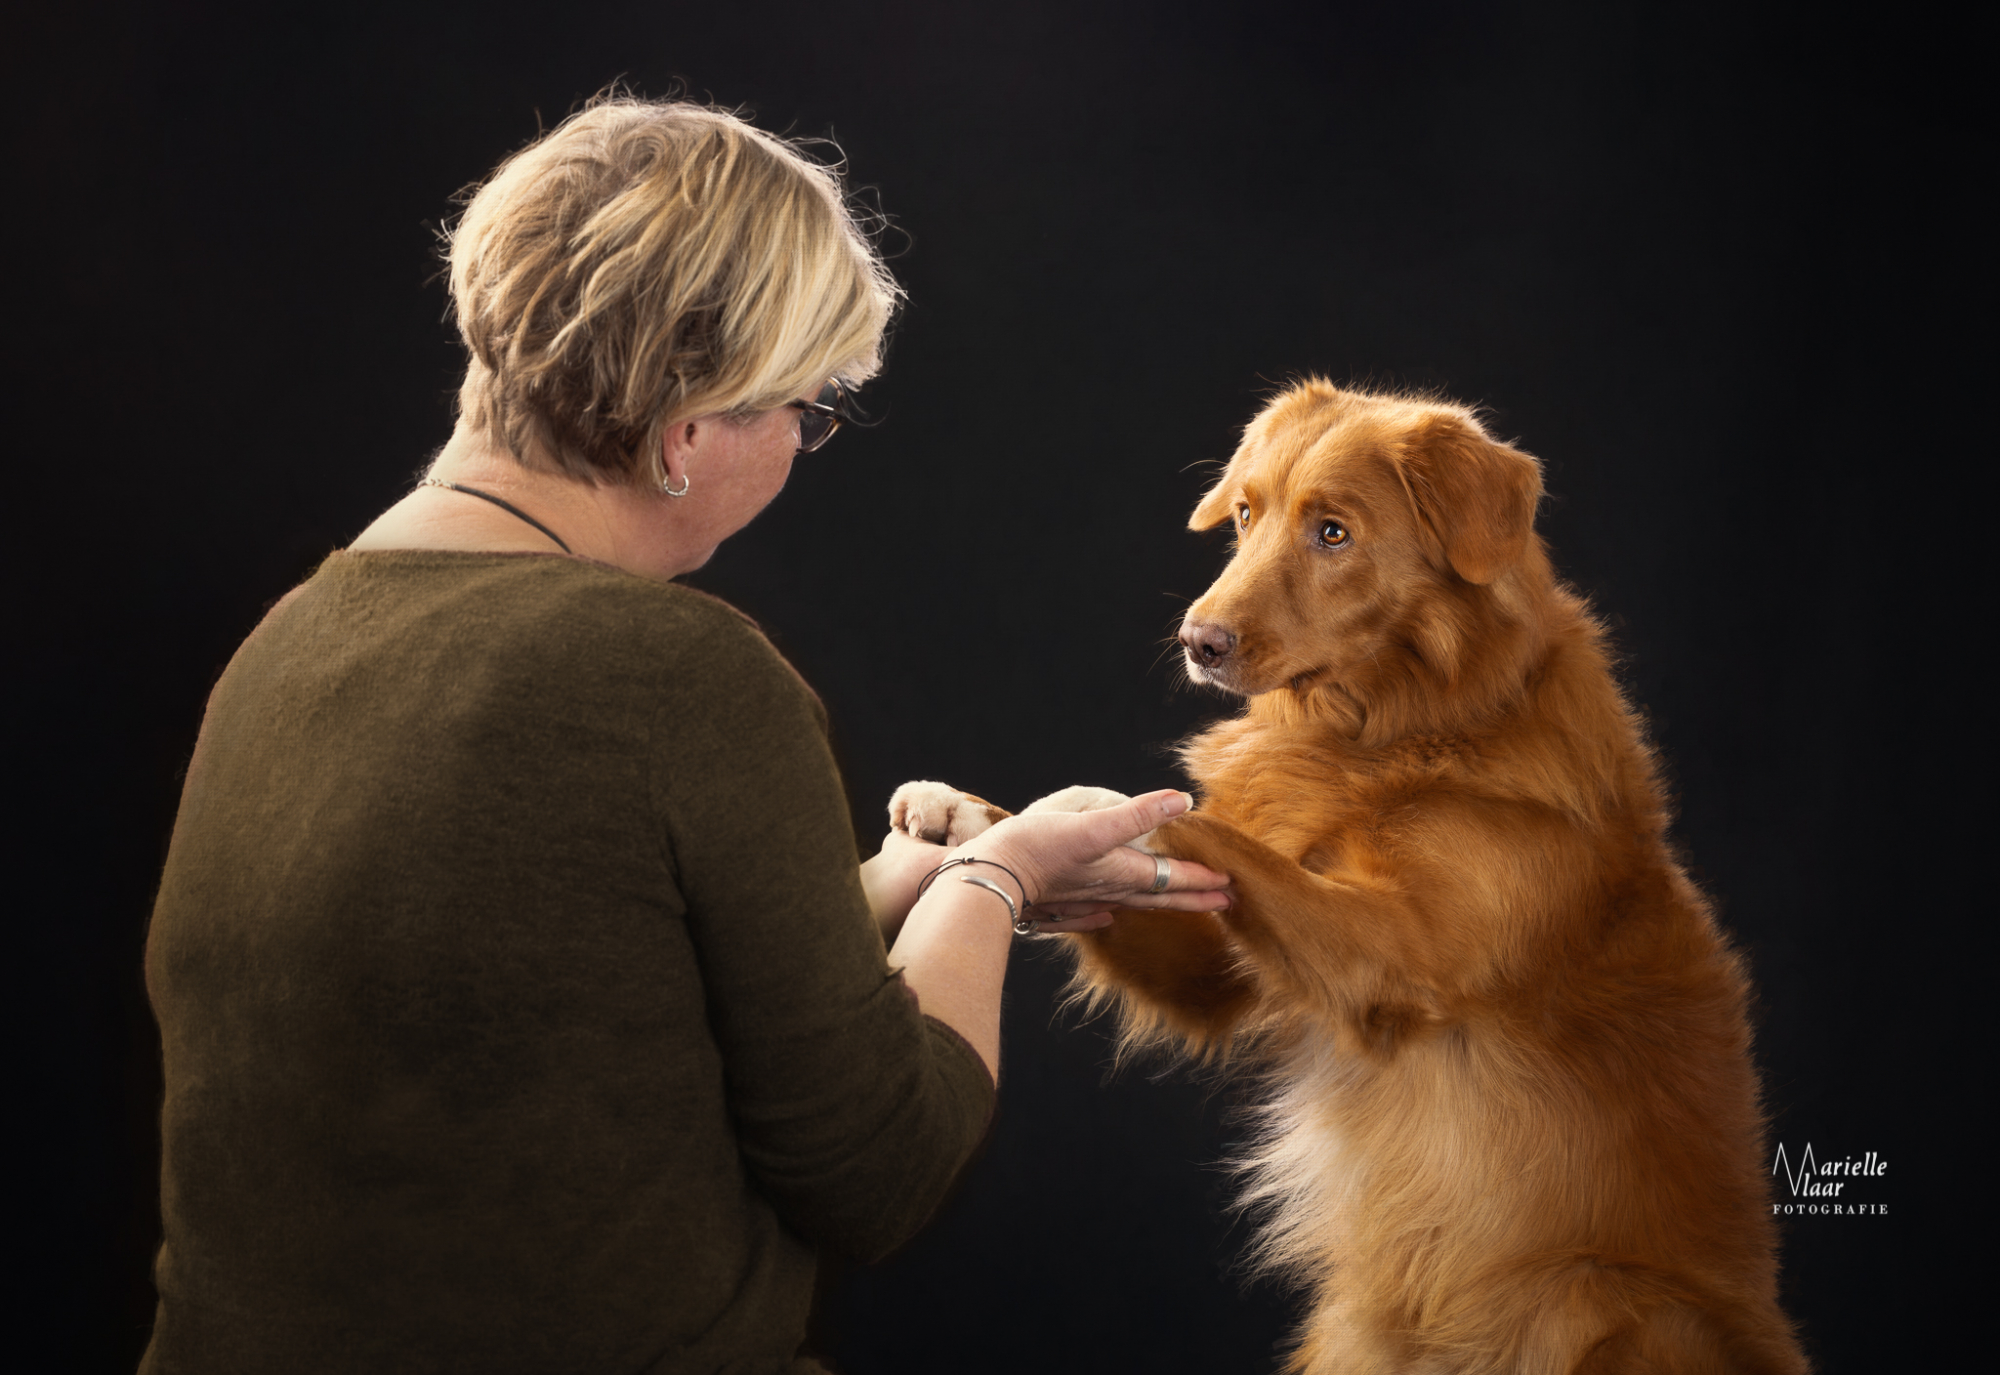 Hondenfotograaf, Honden in studio, Fineart hondenfotograaf, Noordholland, schilderachtig foto hond, hondenfotografie